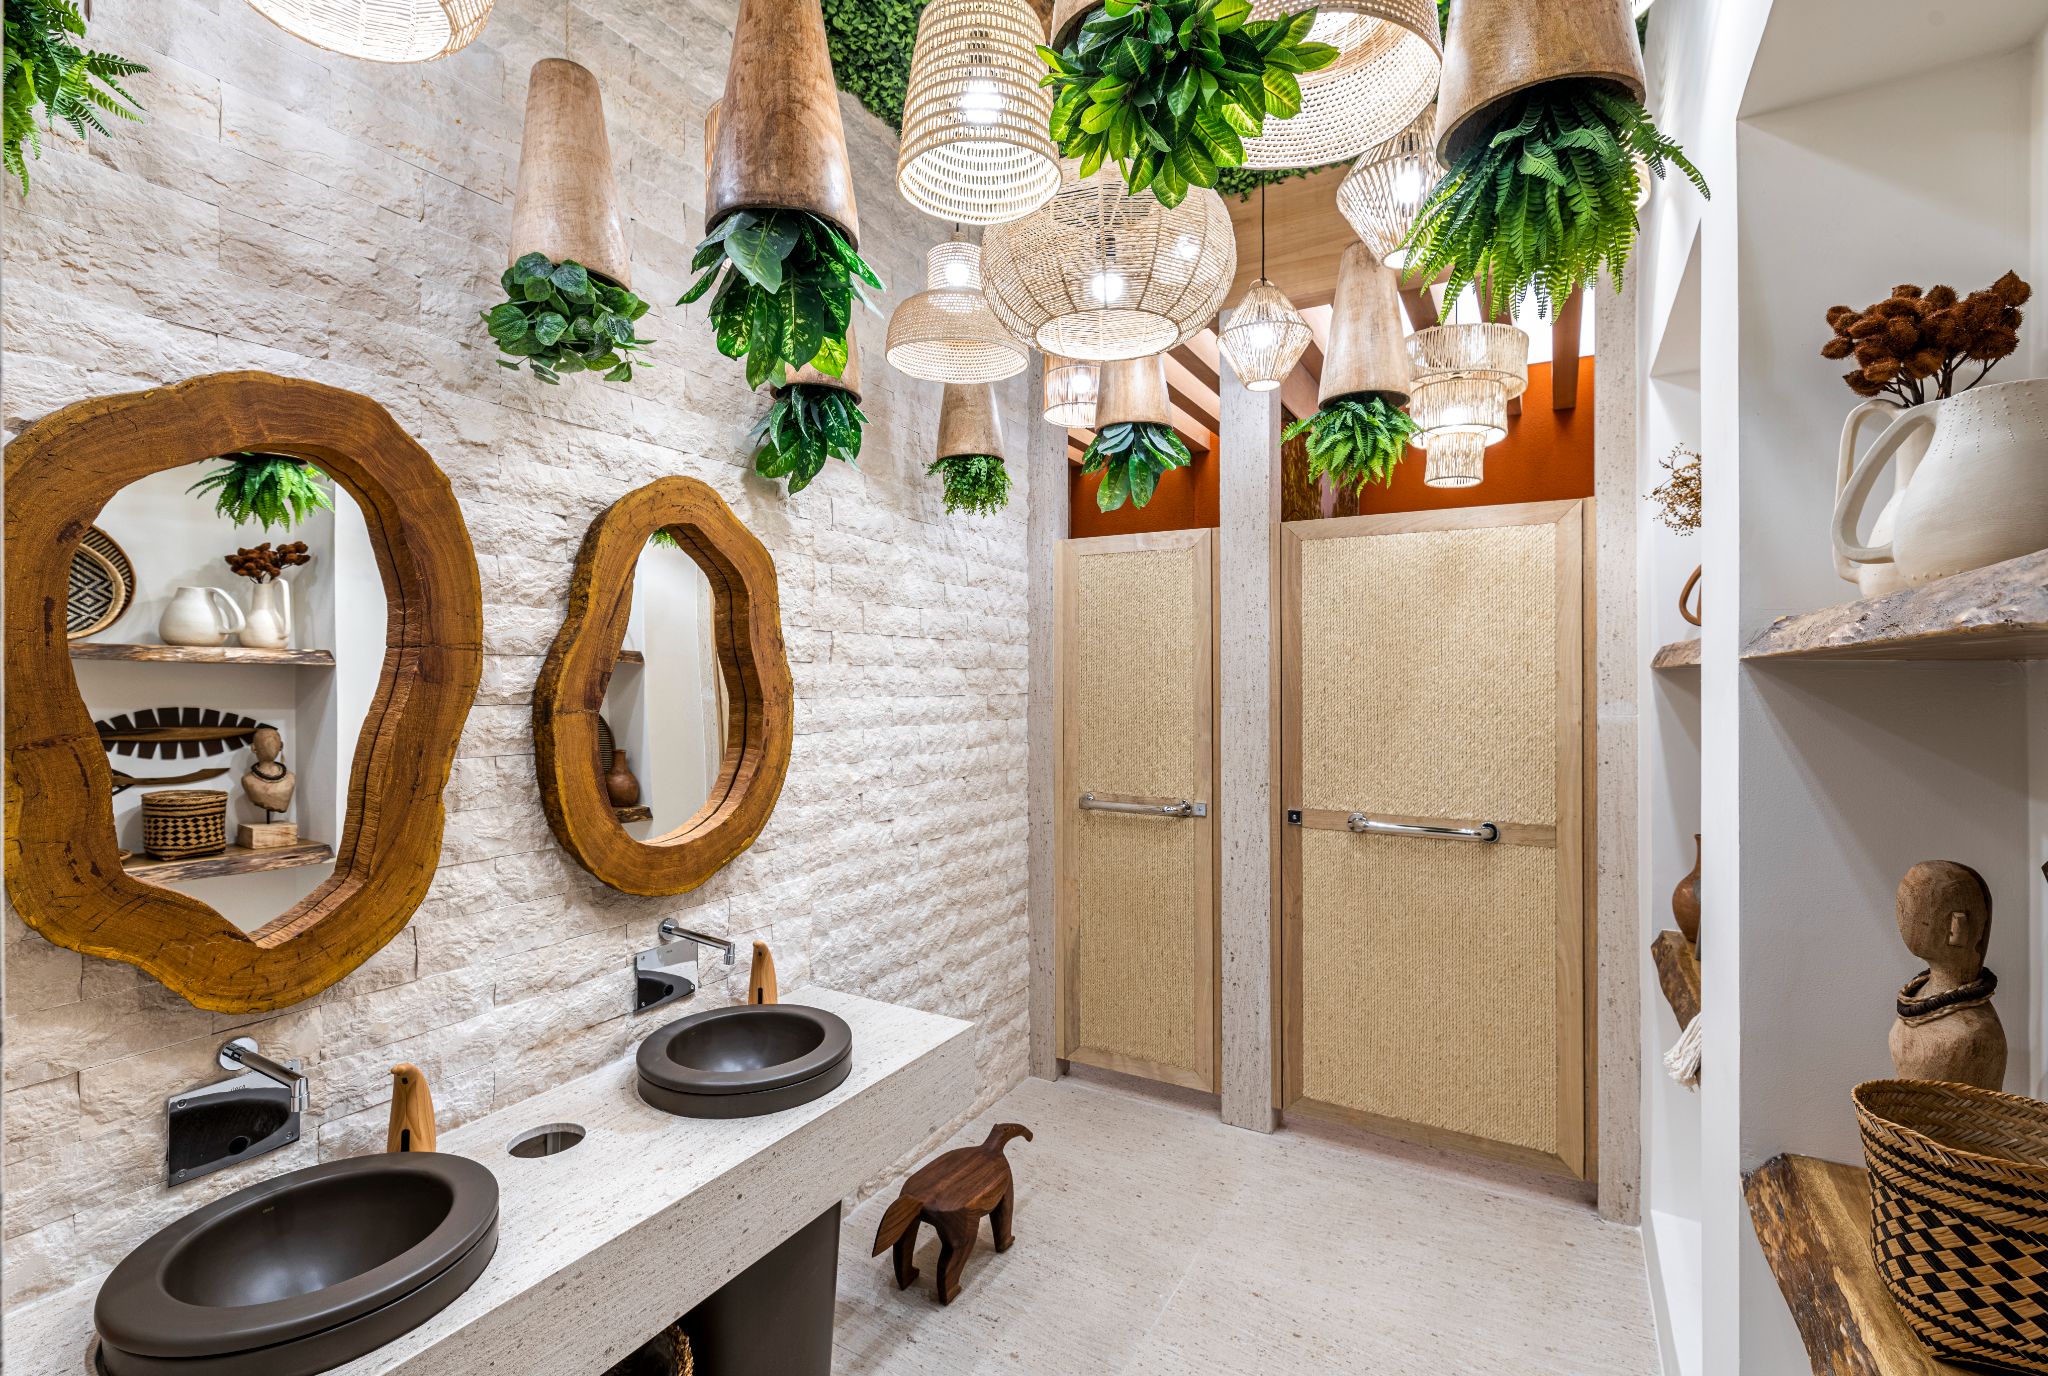 Banheiro com parede de pedras egípcias irregulares, as luminárias de fibras naturais e as plantas pendentes em cúpulas de madeira.